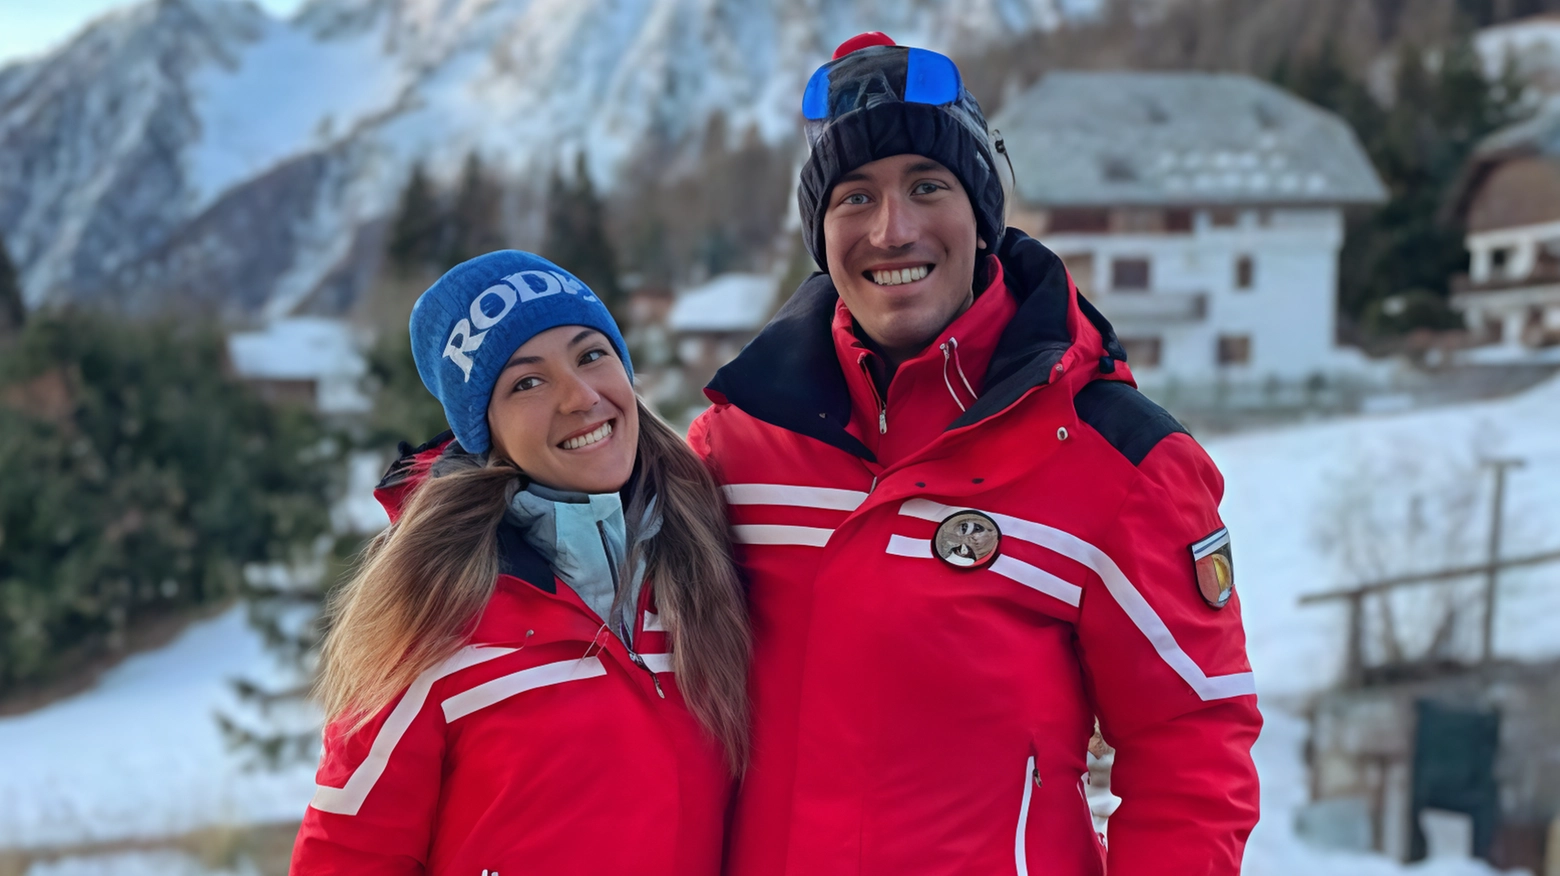 Tragedia in Val d’Aosta: due alpinisti, tra cui il giovane campione di sci Jean Daniel Pession, trovati senza vita lungo la cresta dello Zerbion a Champoluc. Ricerche complesse con tre elicotteri.